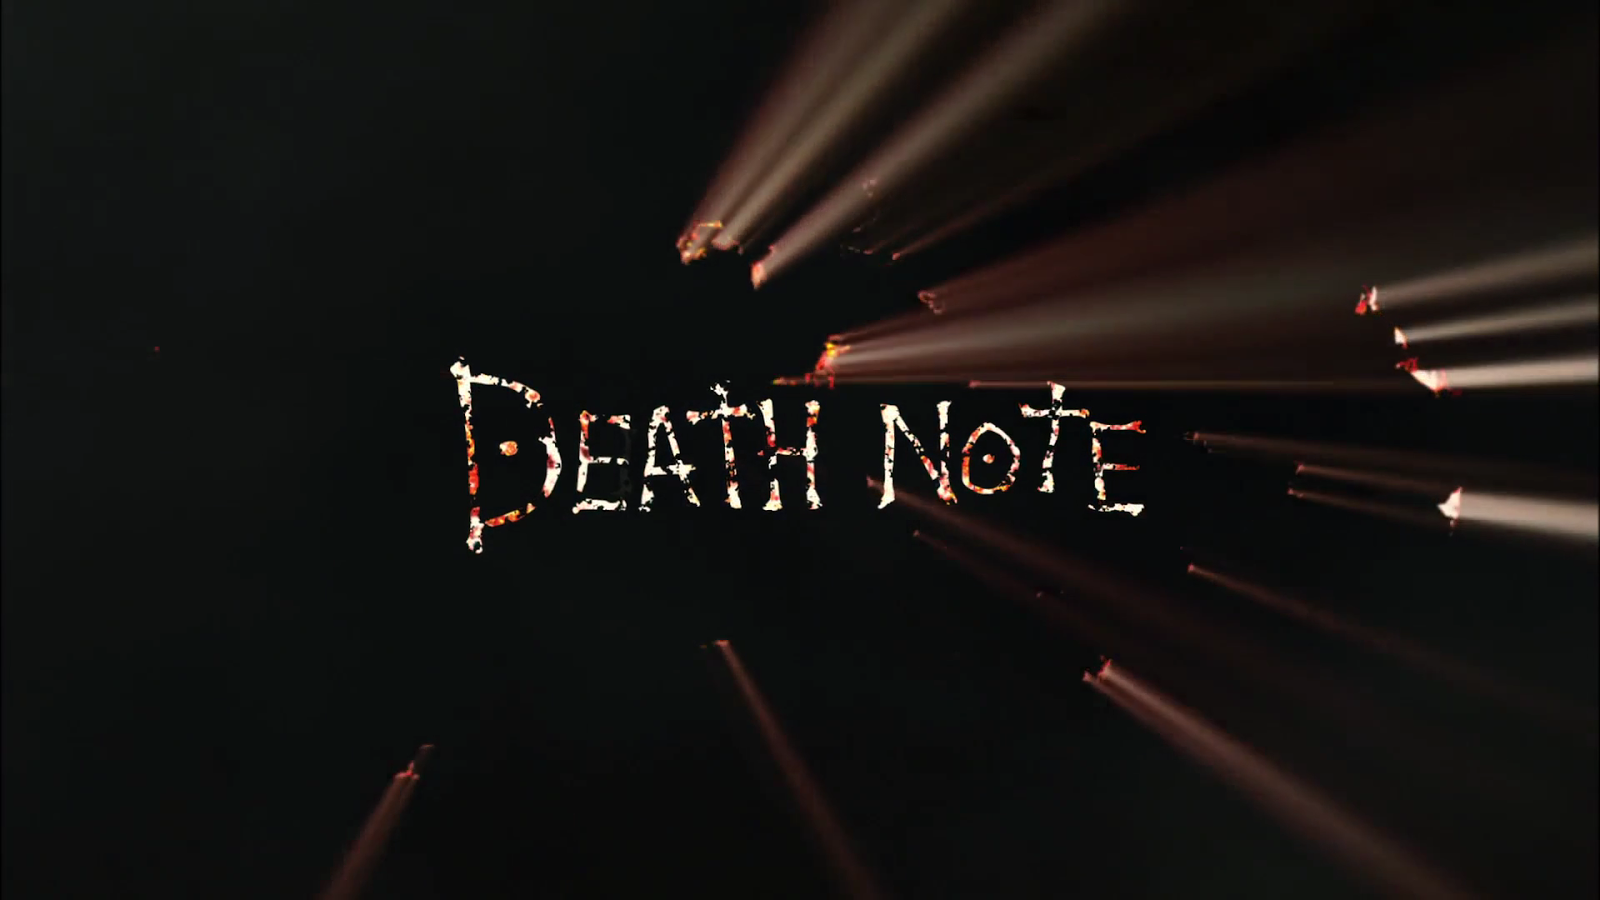 Death Note': Dá para ver a trilogia em live-action antes do filme